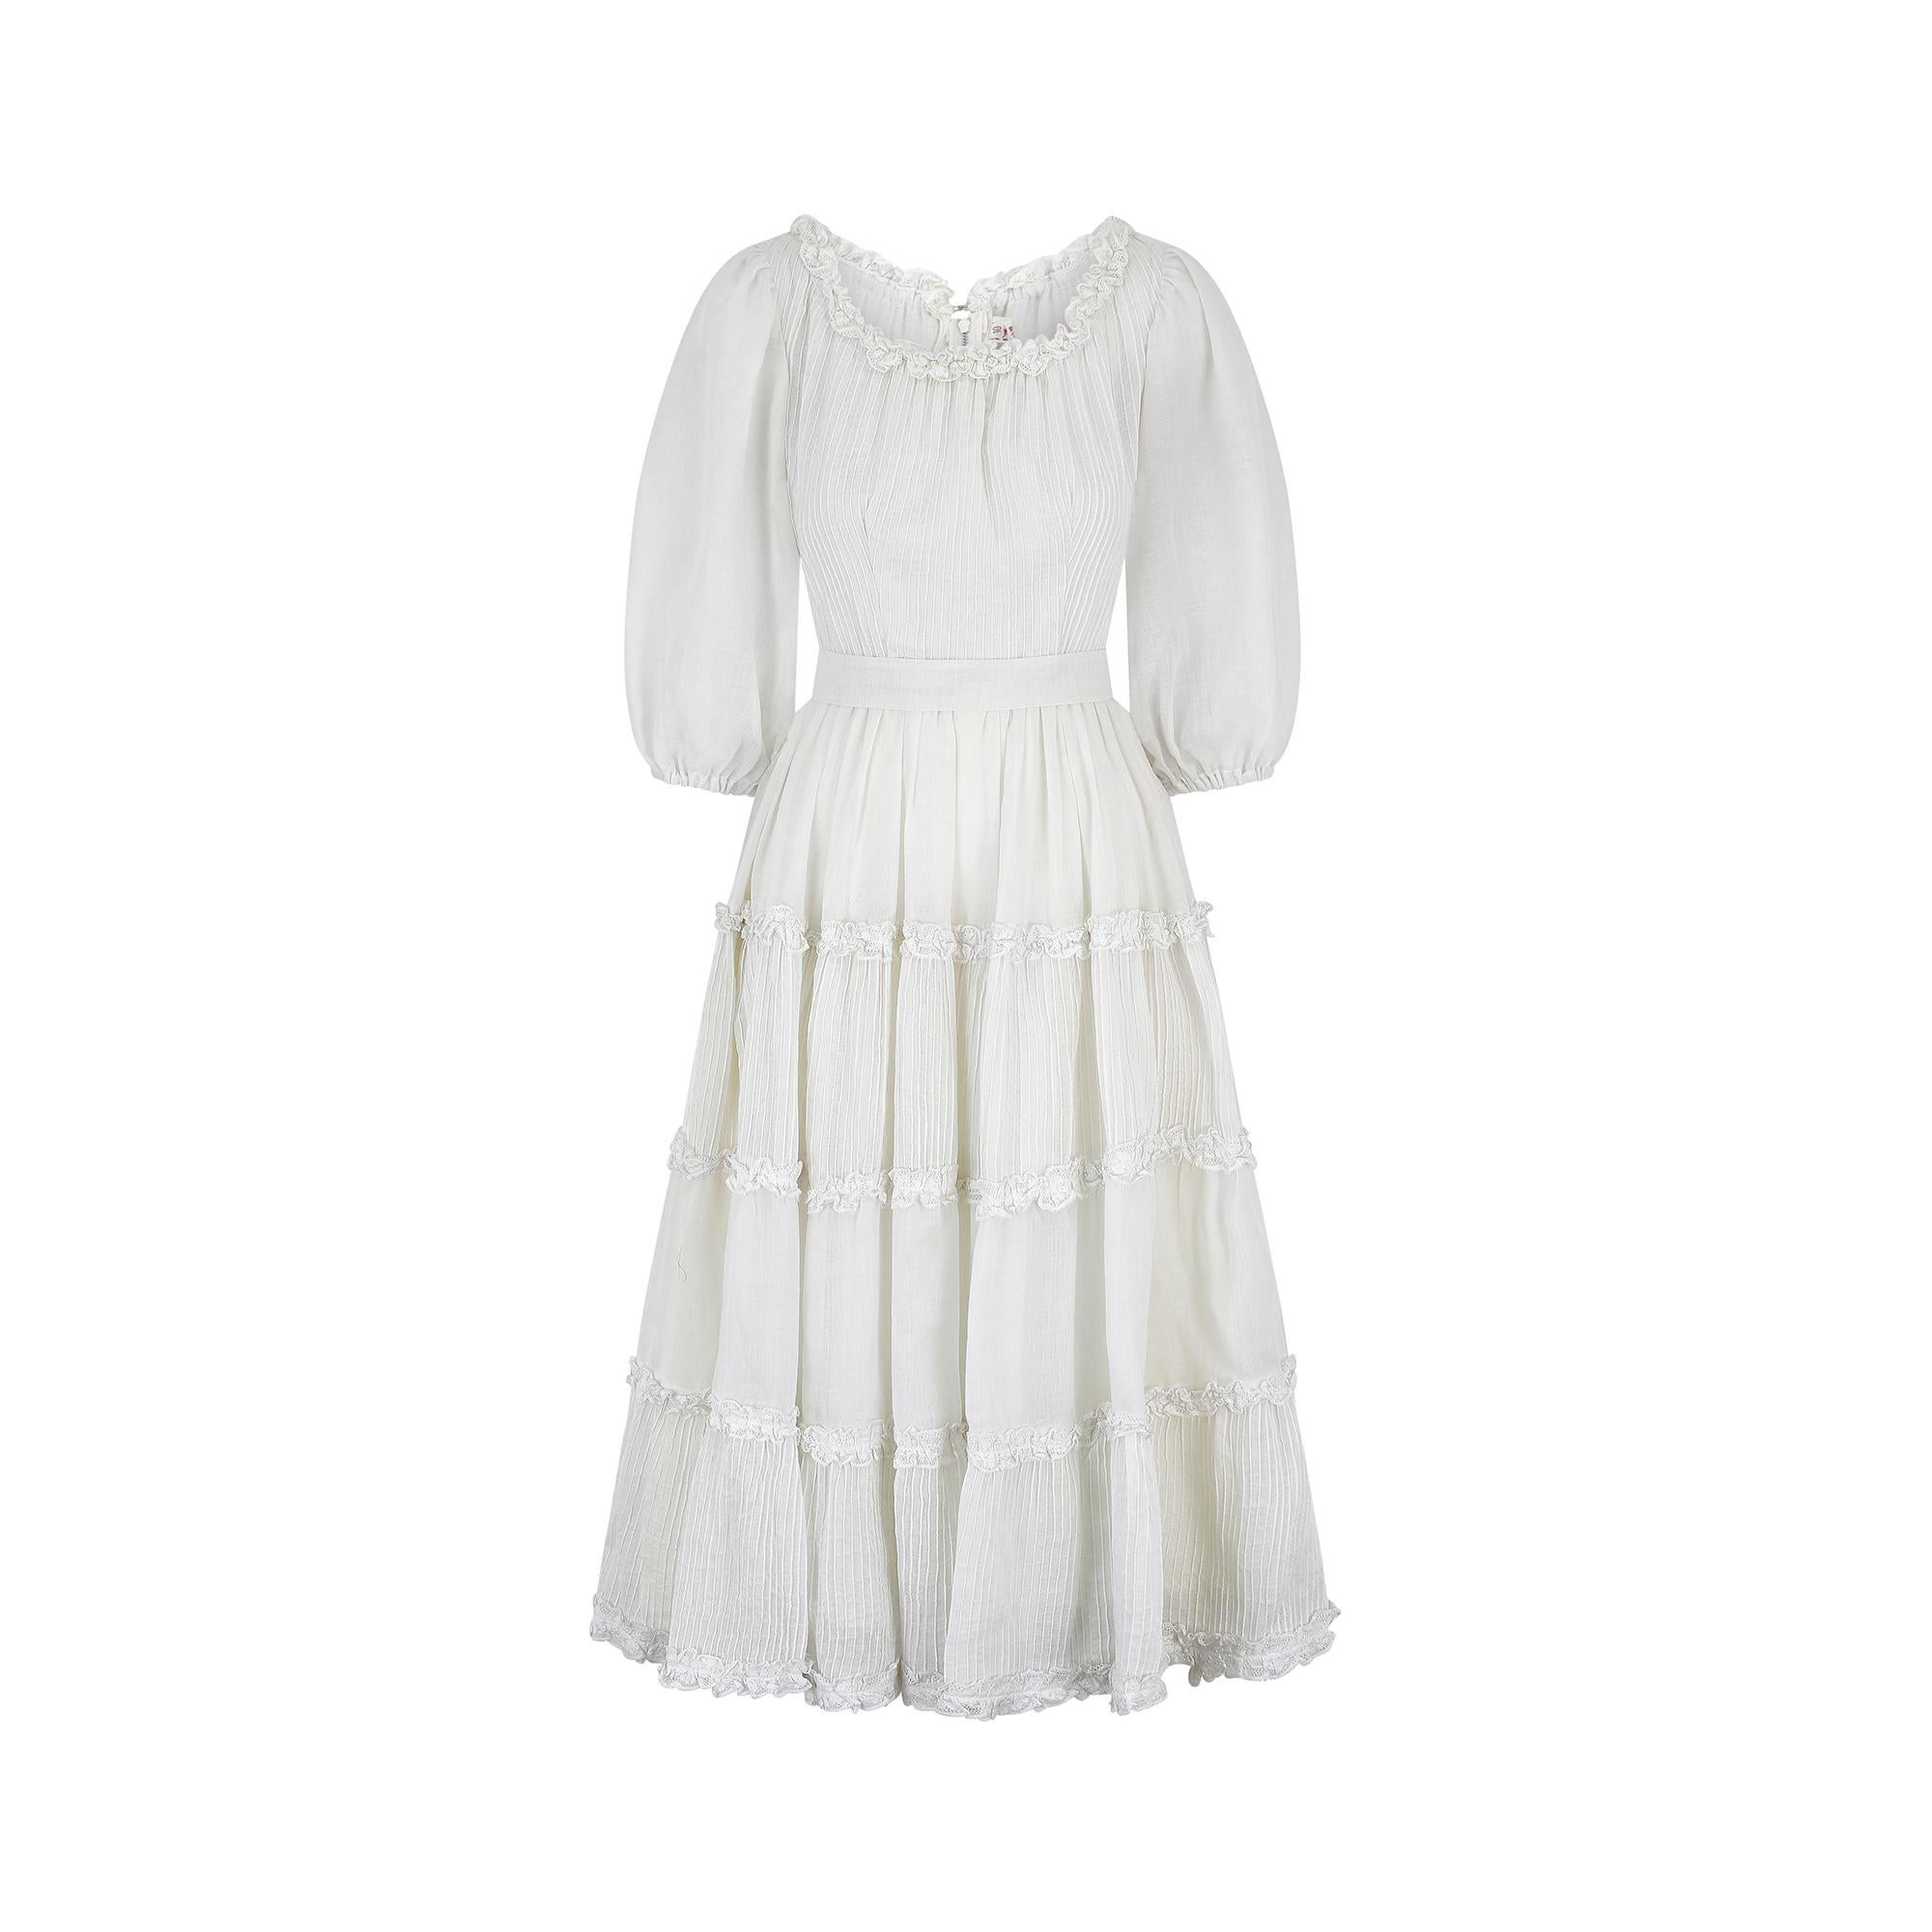 Dieses mexikanische Hochzeitskleid aus weißer Baumwolle im Originalzustand der 1970er Jahre ist in tadellosem Vintage-Zustand und würde mit seiner romantischen, märchenhaften Ästhetik eine bezaubernde Boho-Braut darstellen.  Der mittellange Rock aus